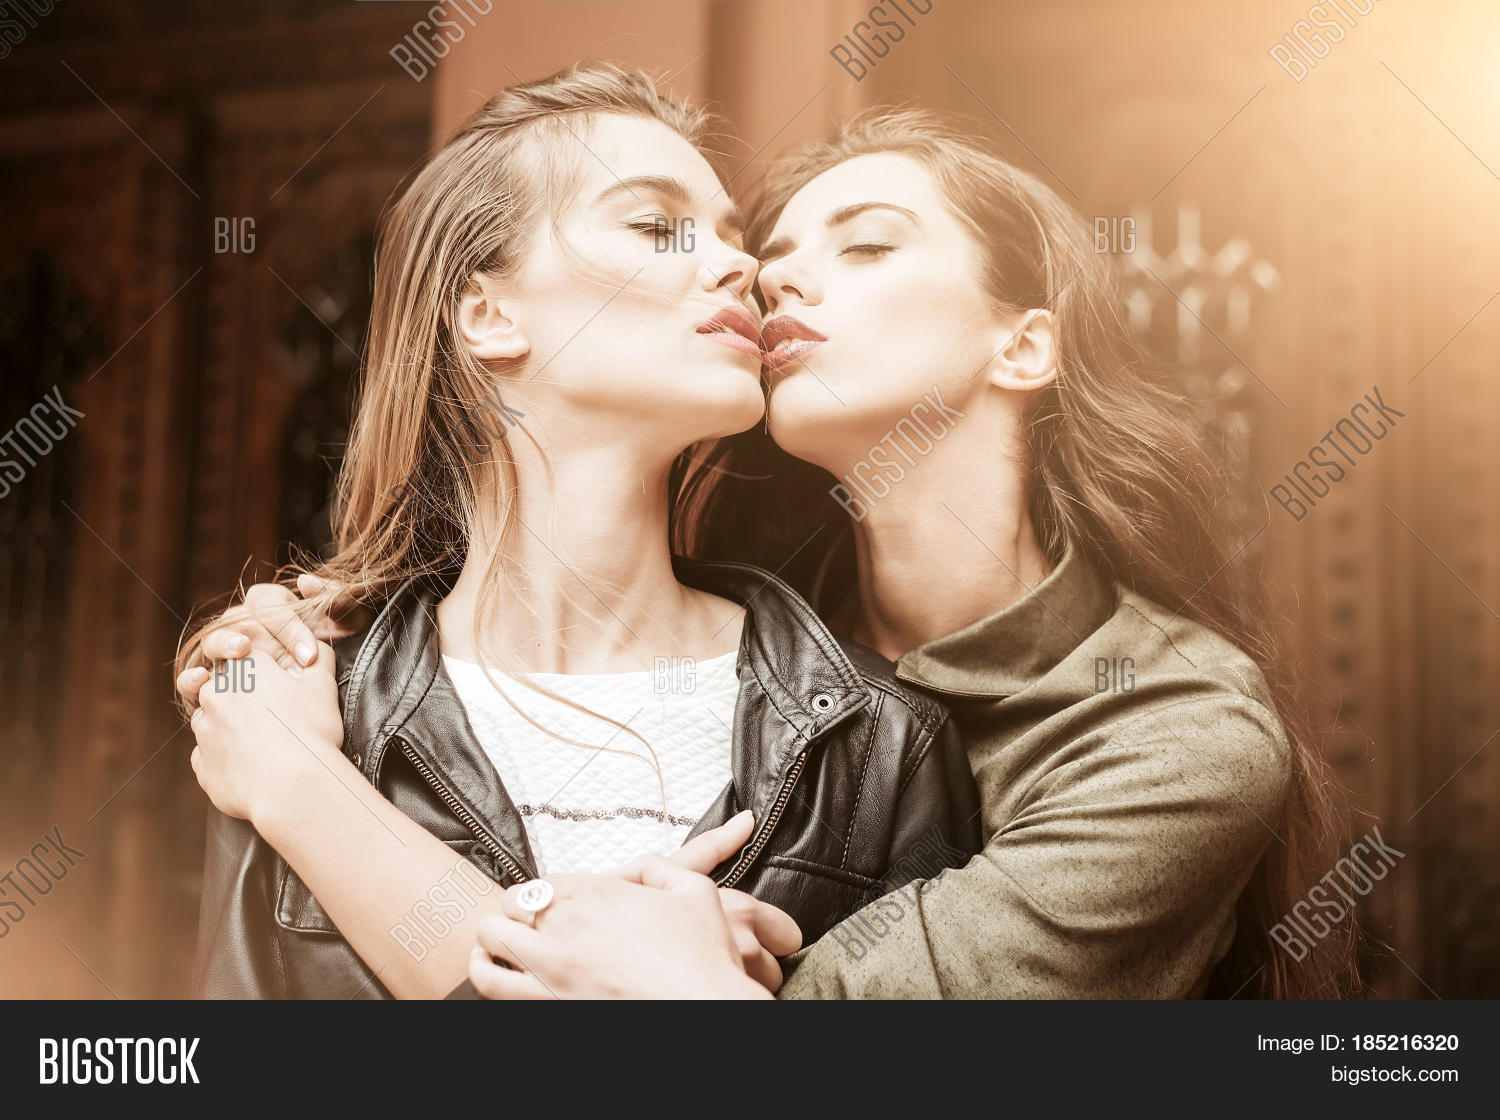 david miura recommends women kissing pics pic